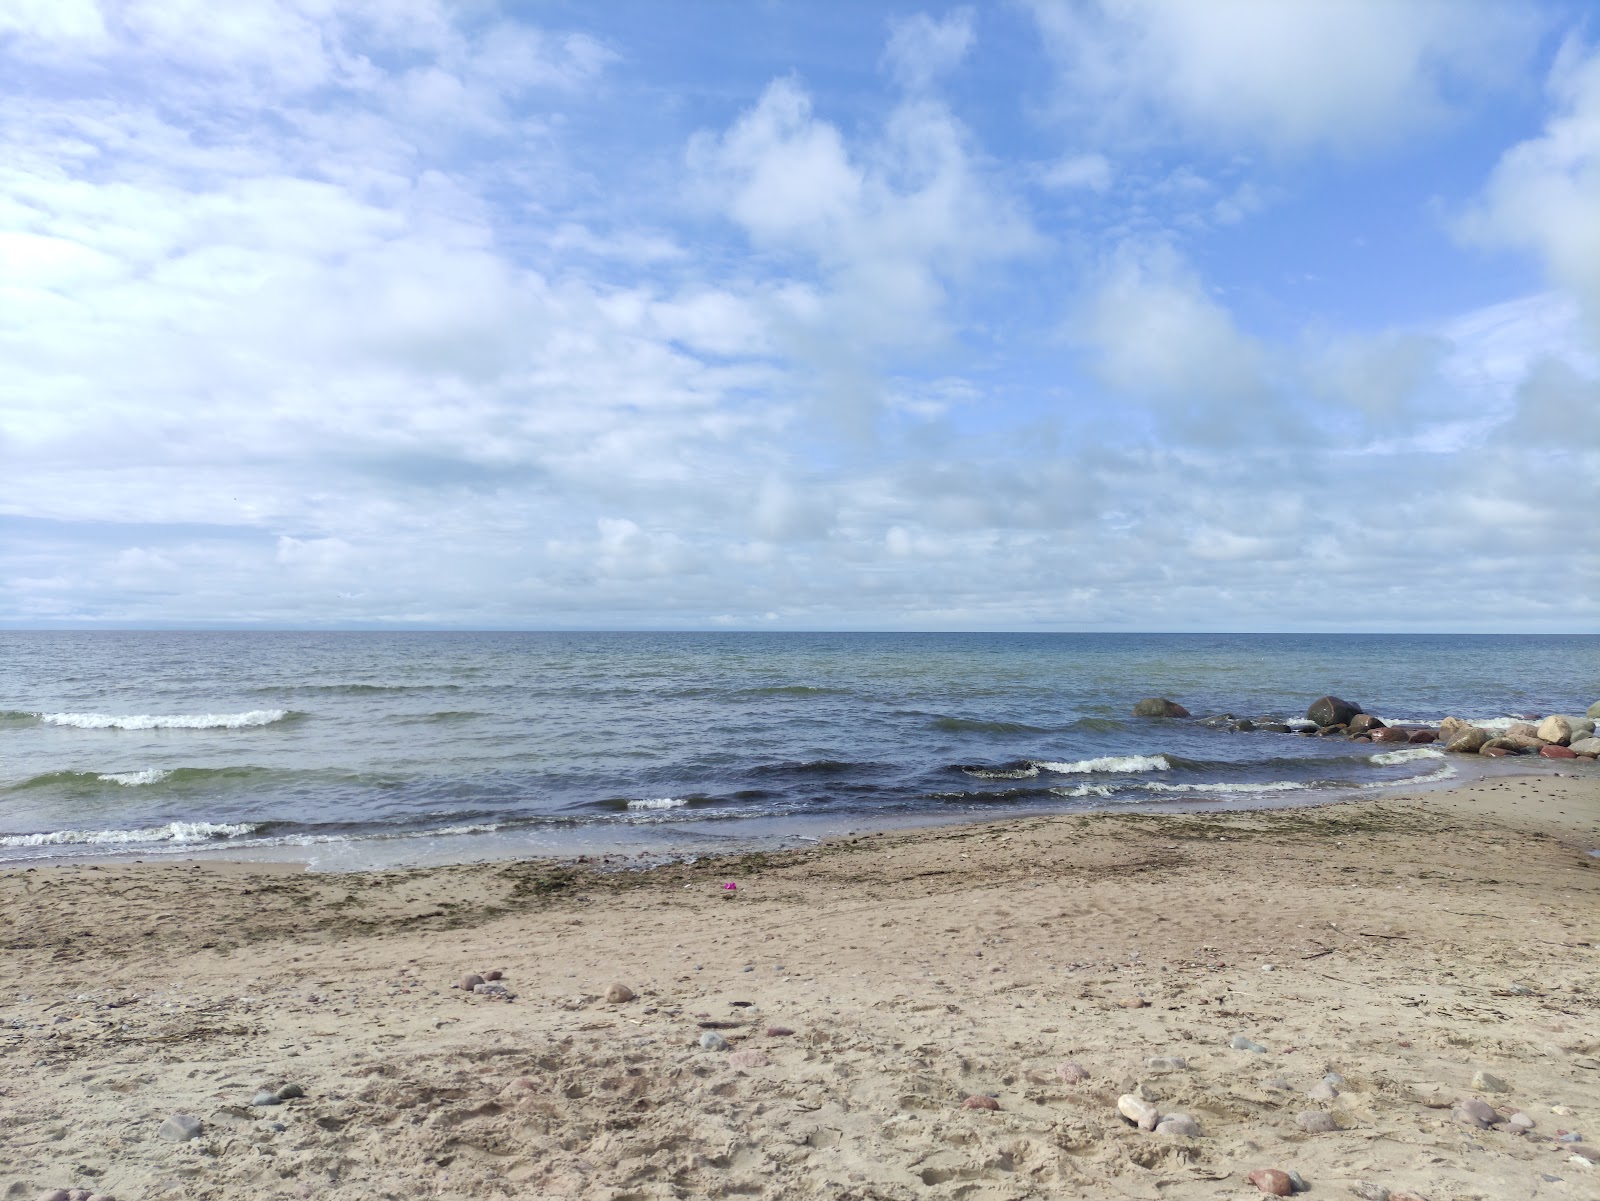 Fotografija Karkles beach nahaja se v naravnem okolju